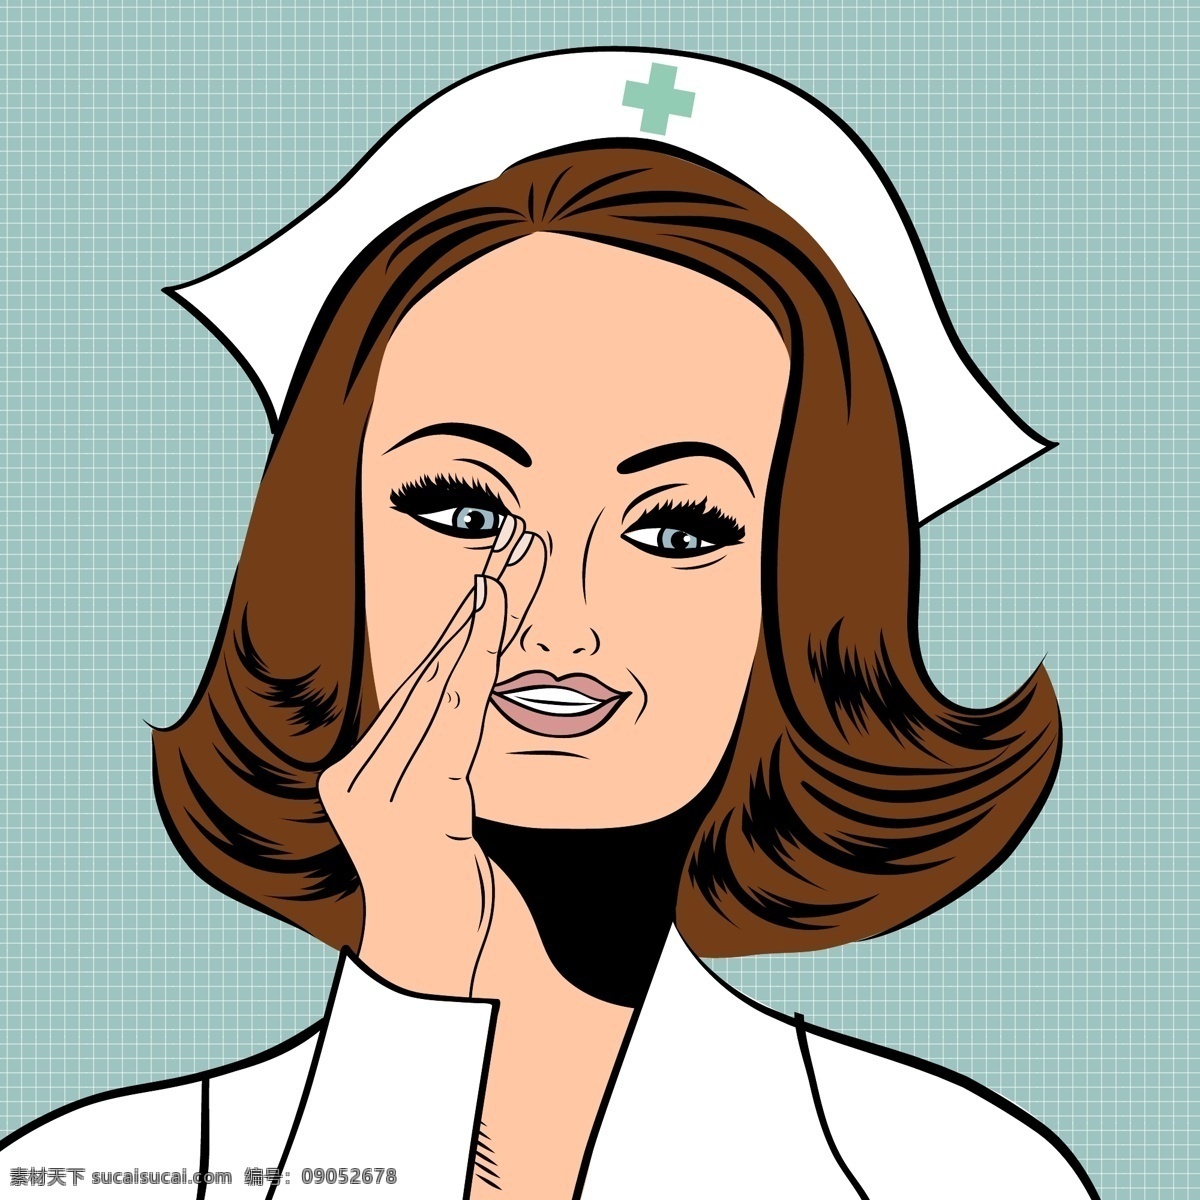 美丽 友好 自信的护士 人 医疗 性格 卡通 医生 健康 可爱 医院 公寓 医药 帽子 工人 白人 帮助 护理 保健 女性 年轻人